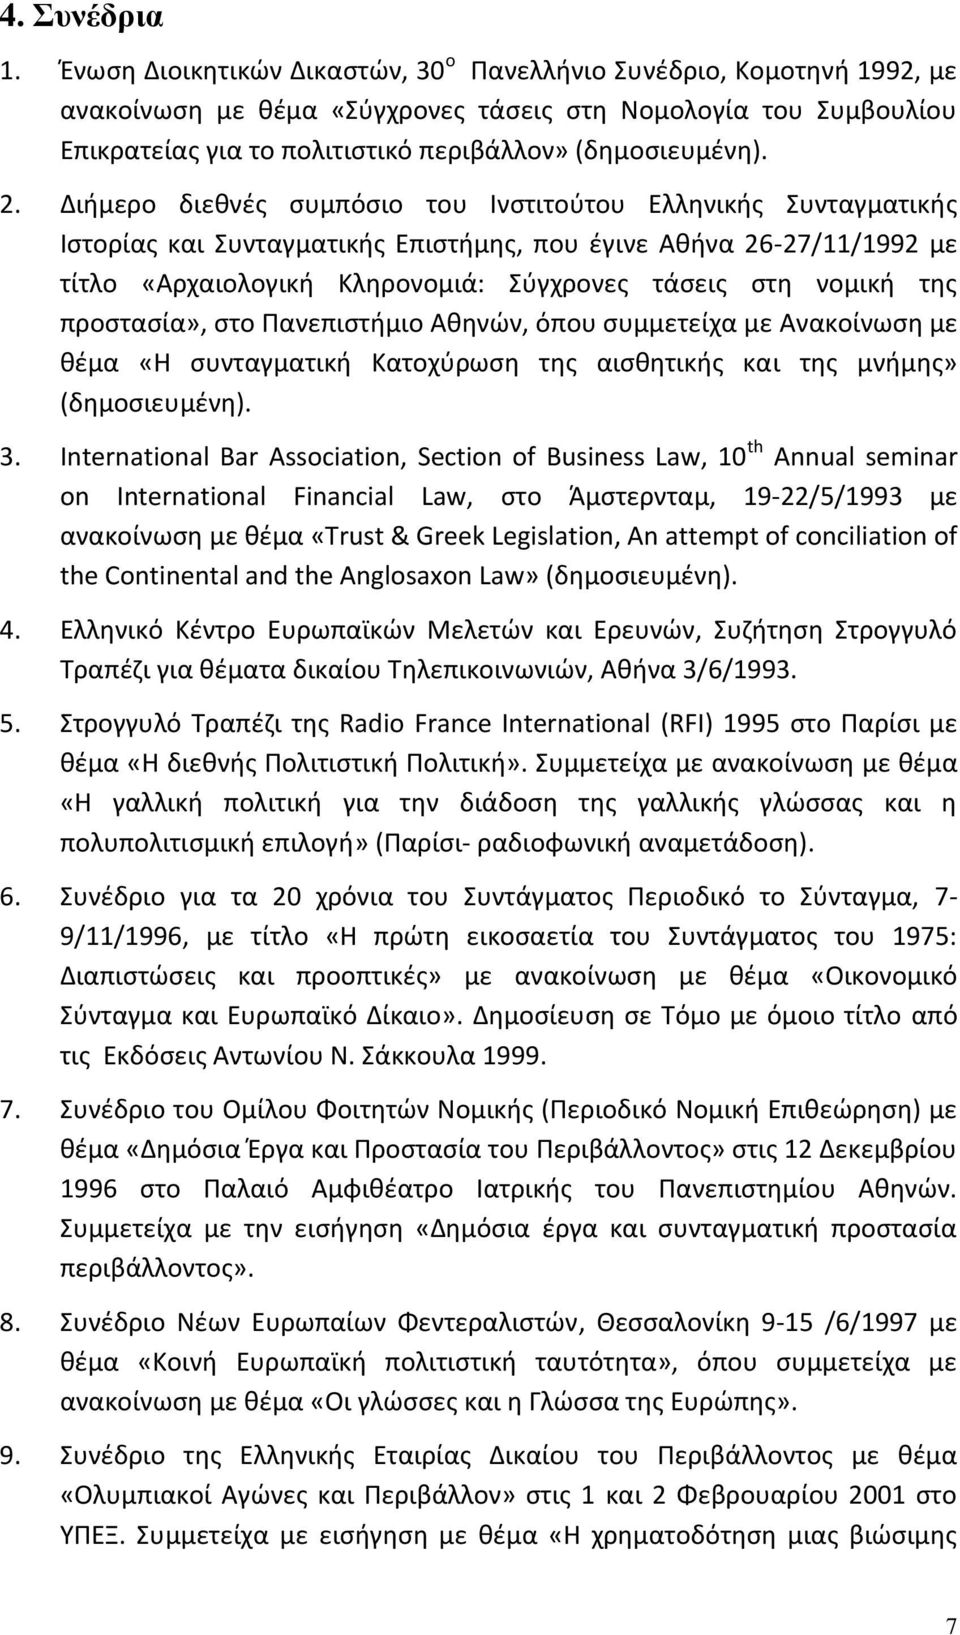 Διήμερο διεθνές συμπόσιο του Ινστιτούτου Ελληνικής Συνταγματικής Ιστορίας και Συνταγματικής Επιστήμης, που έγινε Αθήνα 26-27/11/1992 με τίτλο «Αρχαιολογική Κληρονομιά: Σύγχρονες τάσεις στη νομική της